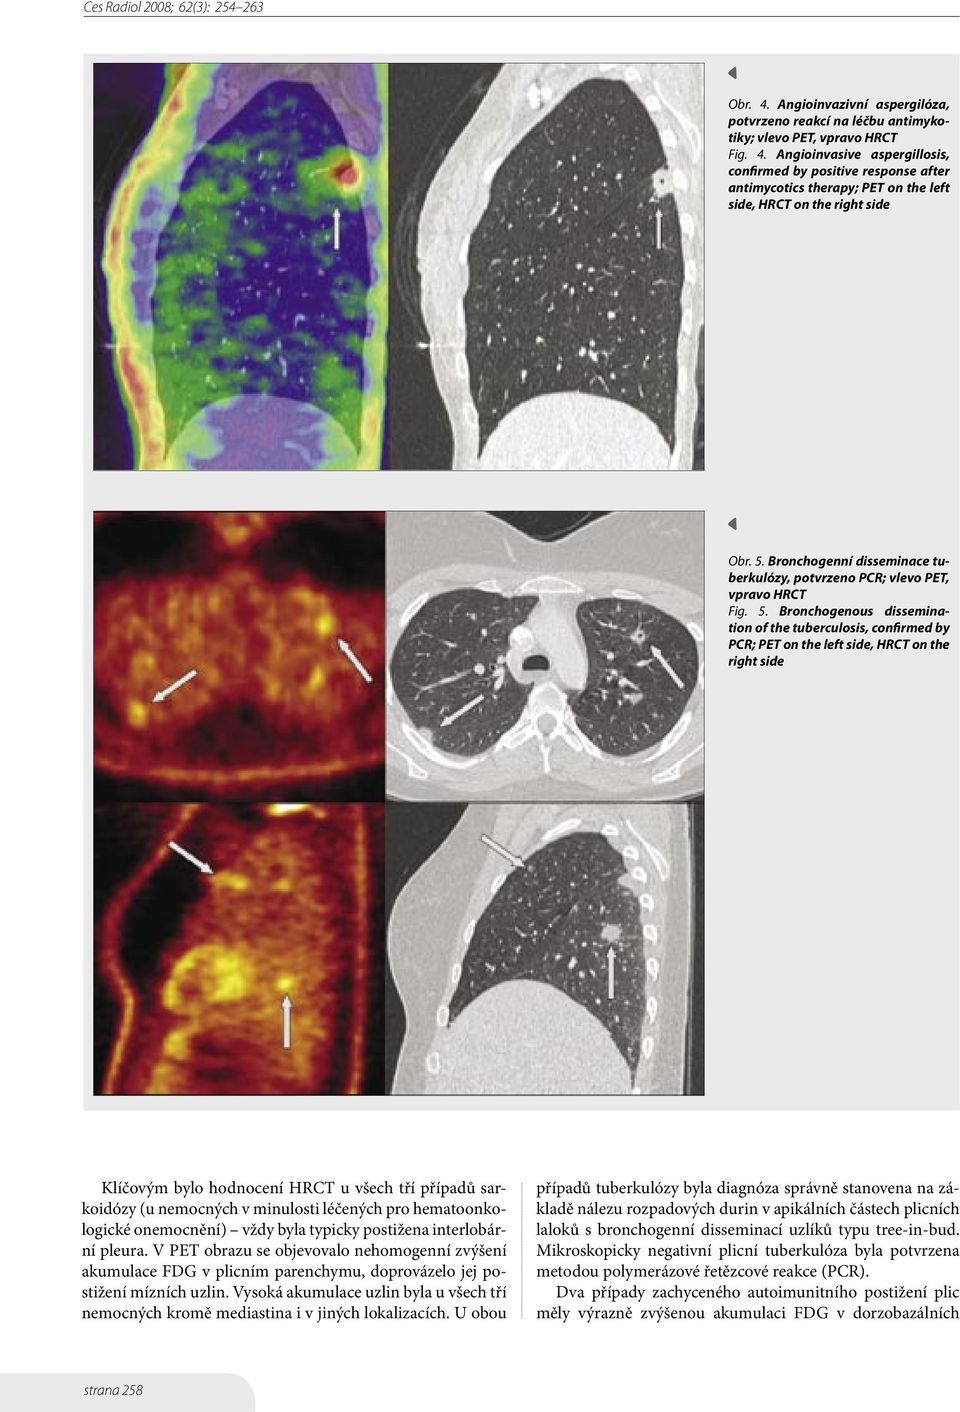 Bronchogenous dissemination of the tuberculosis, confirmed by PCR; PET on the left side, HRCT on the right side Klíčovým bylo hodnocení HRCT u všech tří případů sarkoidózy (u nemocných v minulosti